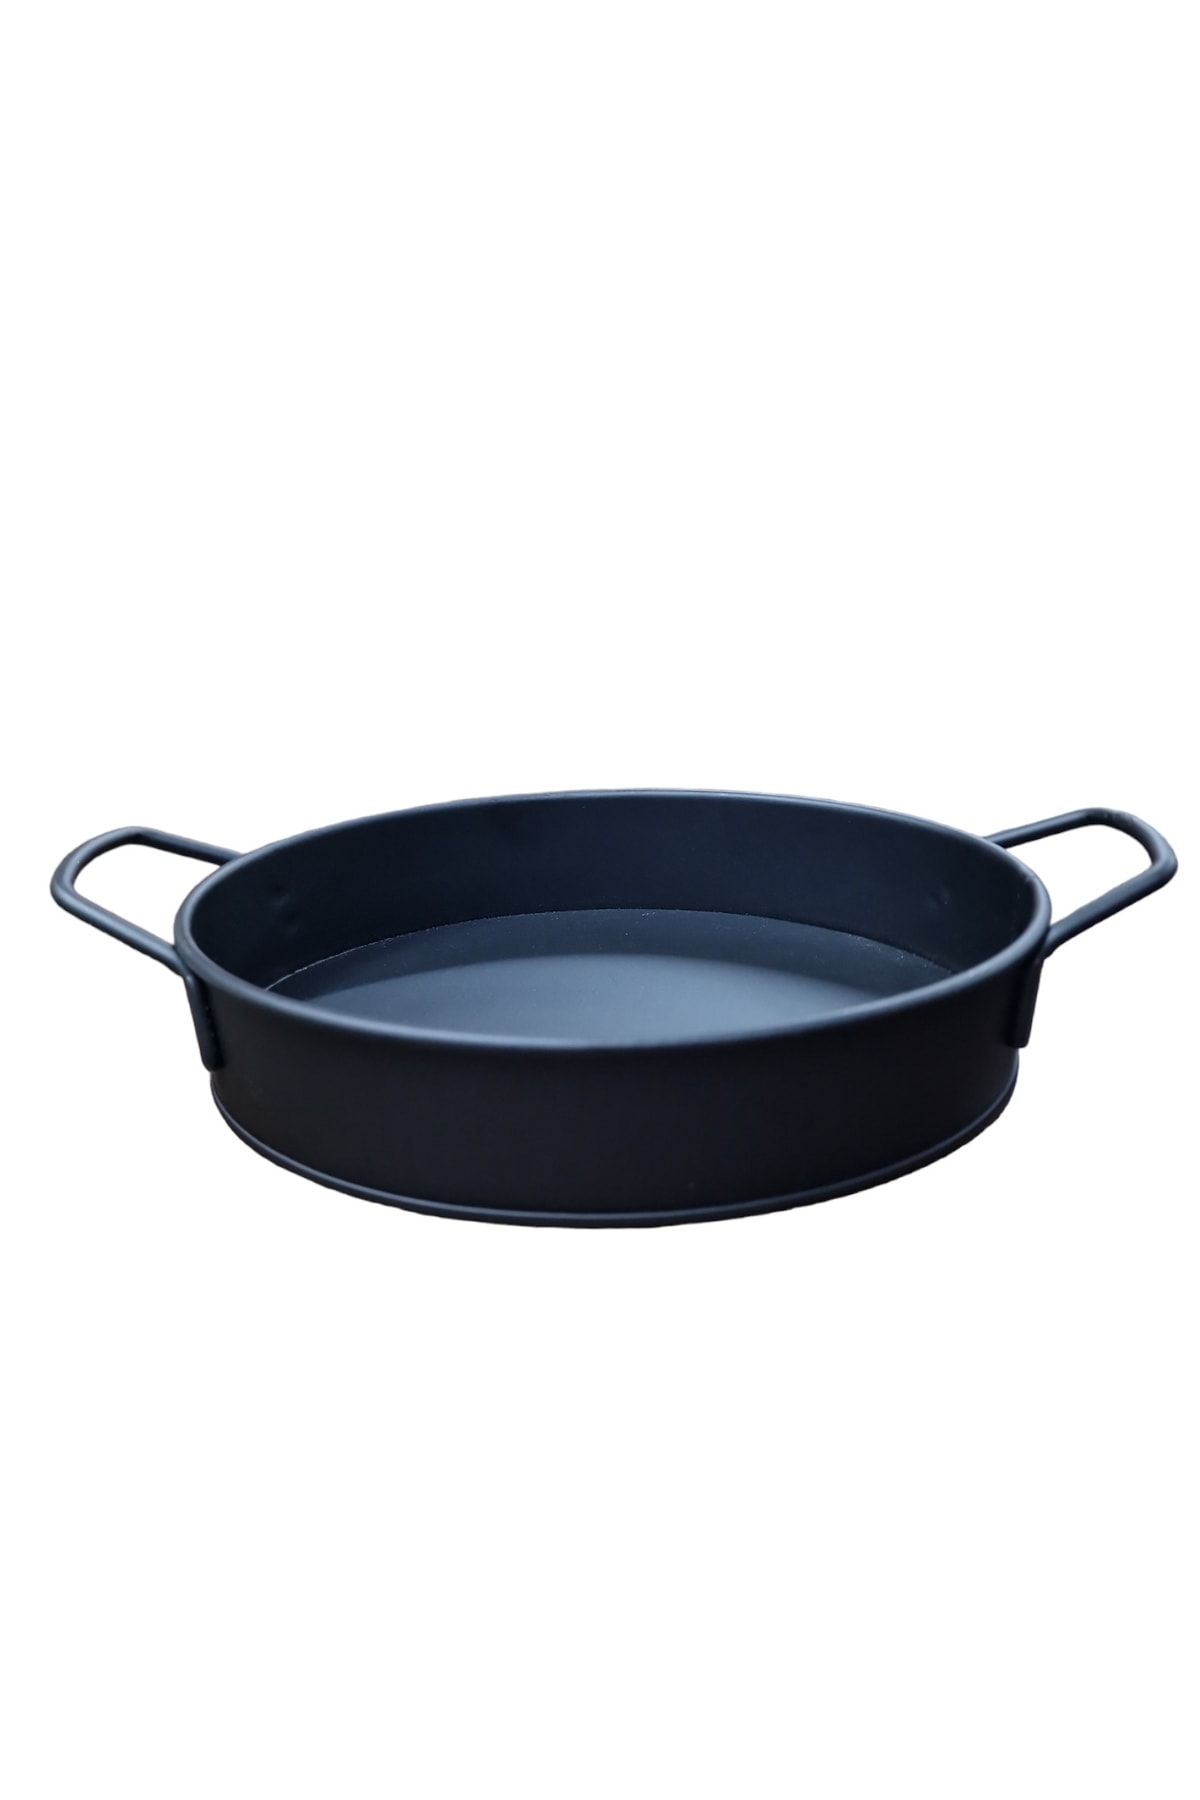 Matar Endüstriyel Mutfak Ekipmanları Metal Siyah Renk Patates Sunum Kovası 26*15 Cm Orta Boy